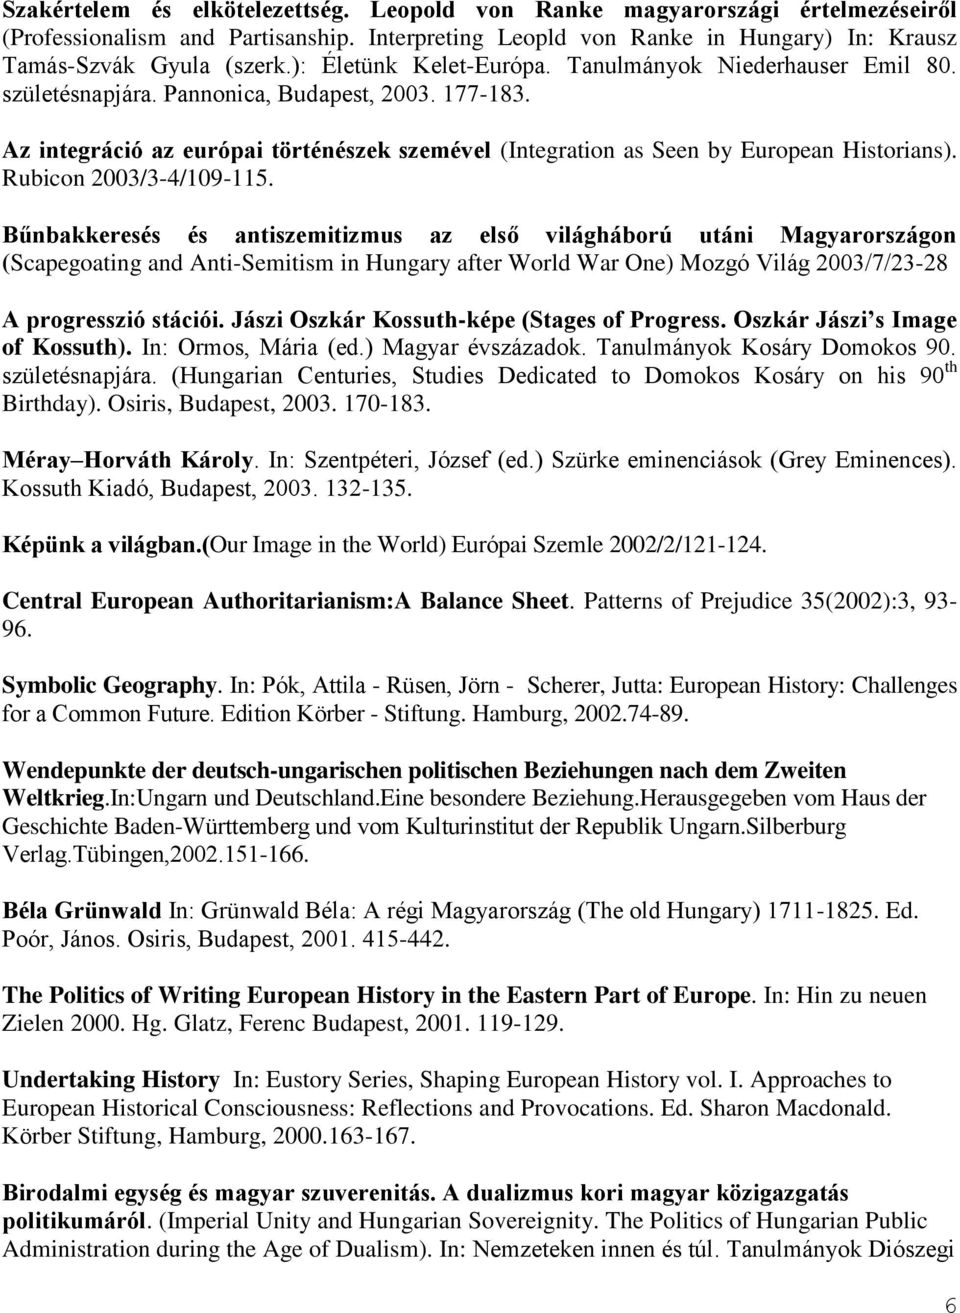 Az integráció az európai történészek szemével (Integration as Seen by European Historians). Rubicon 2003/3-4/109-115.